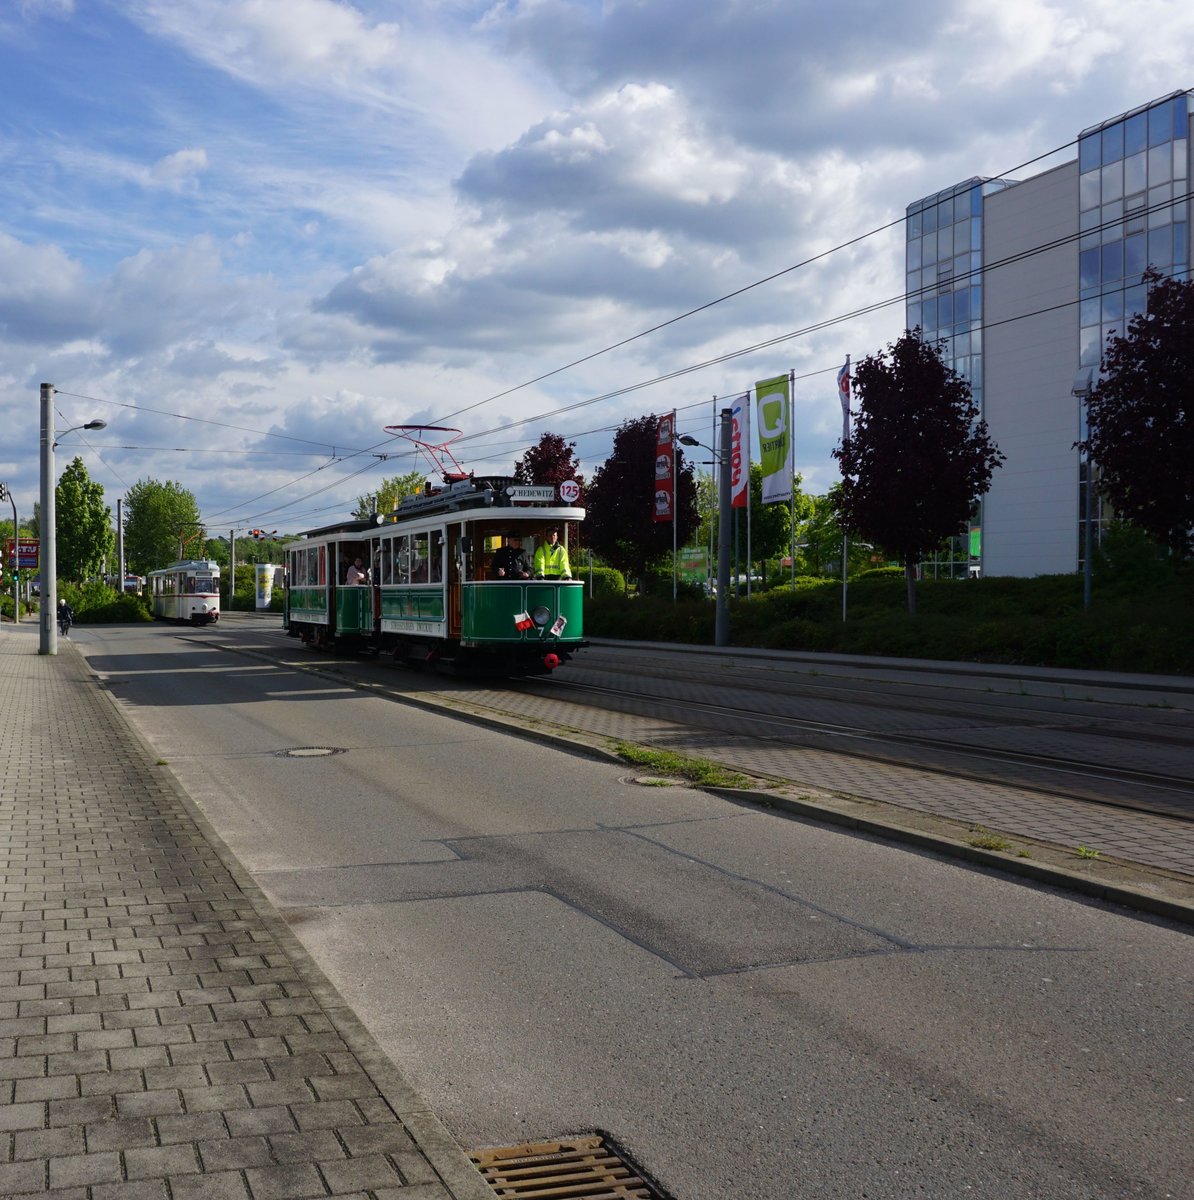 Am 11.und 12. Mai 2019 fanden in Zwickau die Feier zu 125 Jahre Strassenbahn Zwickau statt.Hier der Triebwagen Nummer7 Bj.1912 mit Beiwagen Nummer17.